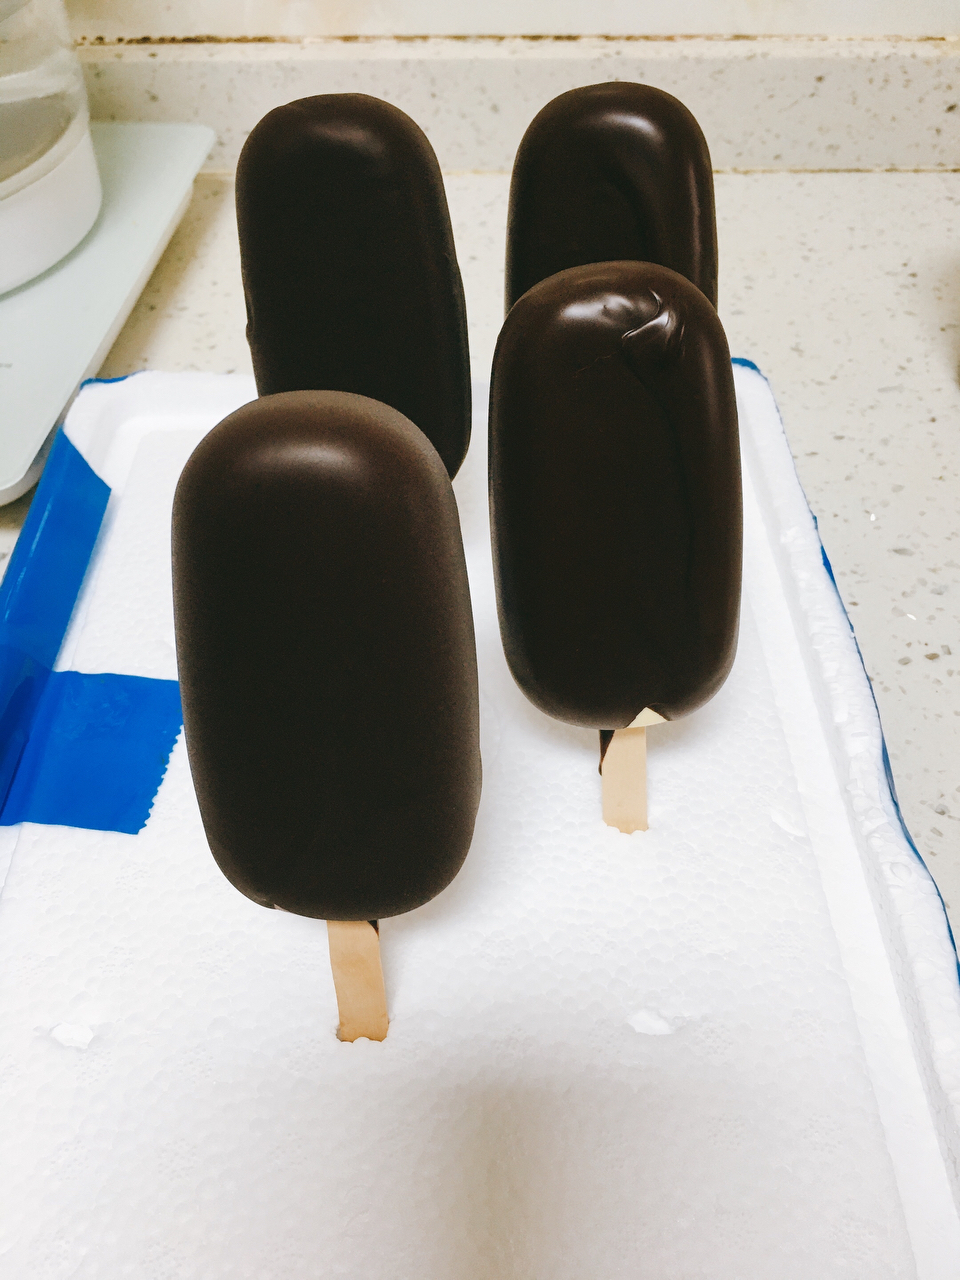 生酮版—超低碳冰淇淋  香草、抹茶、巧克力  脆皮 梦龙真的超好吃😋无冰渣